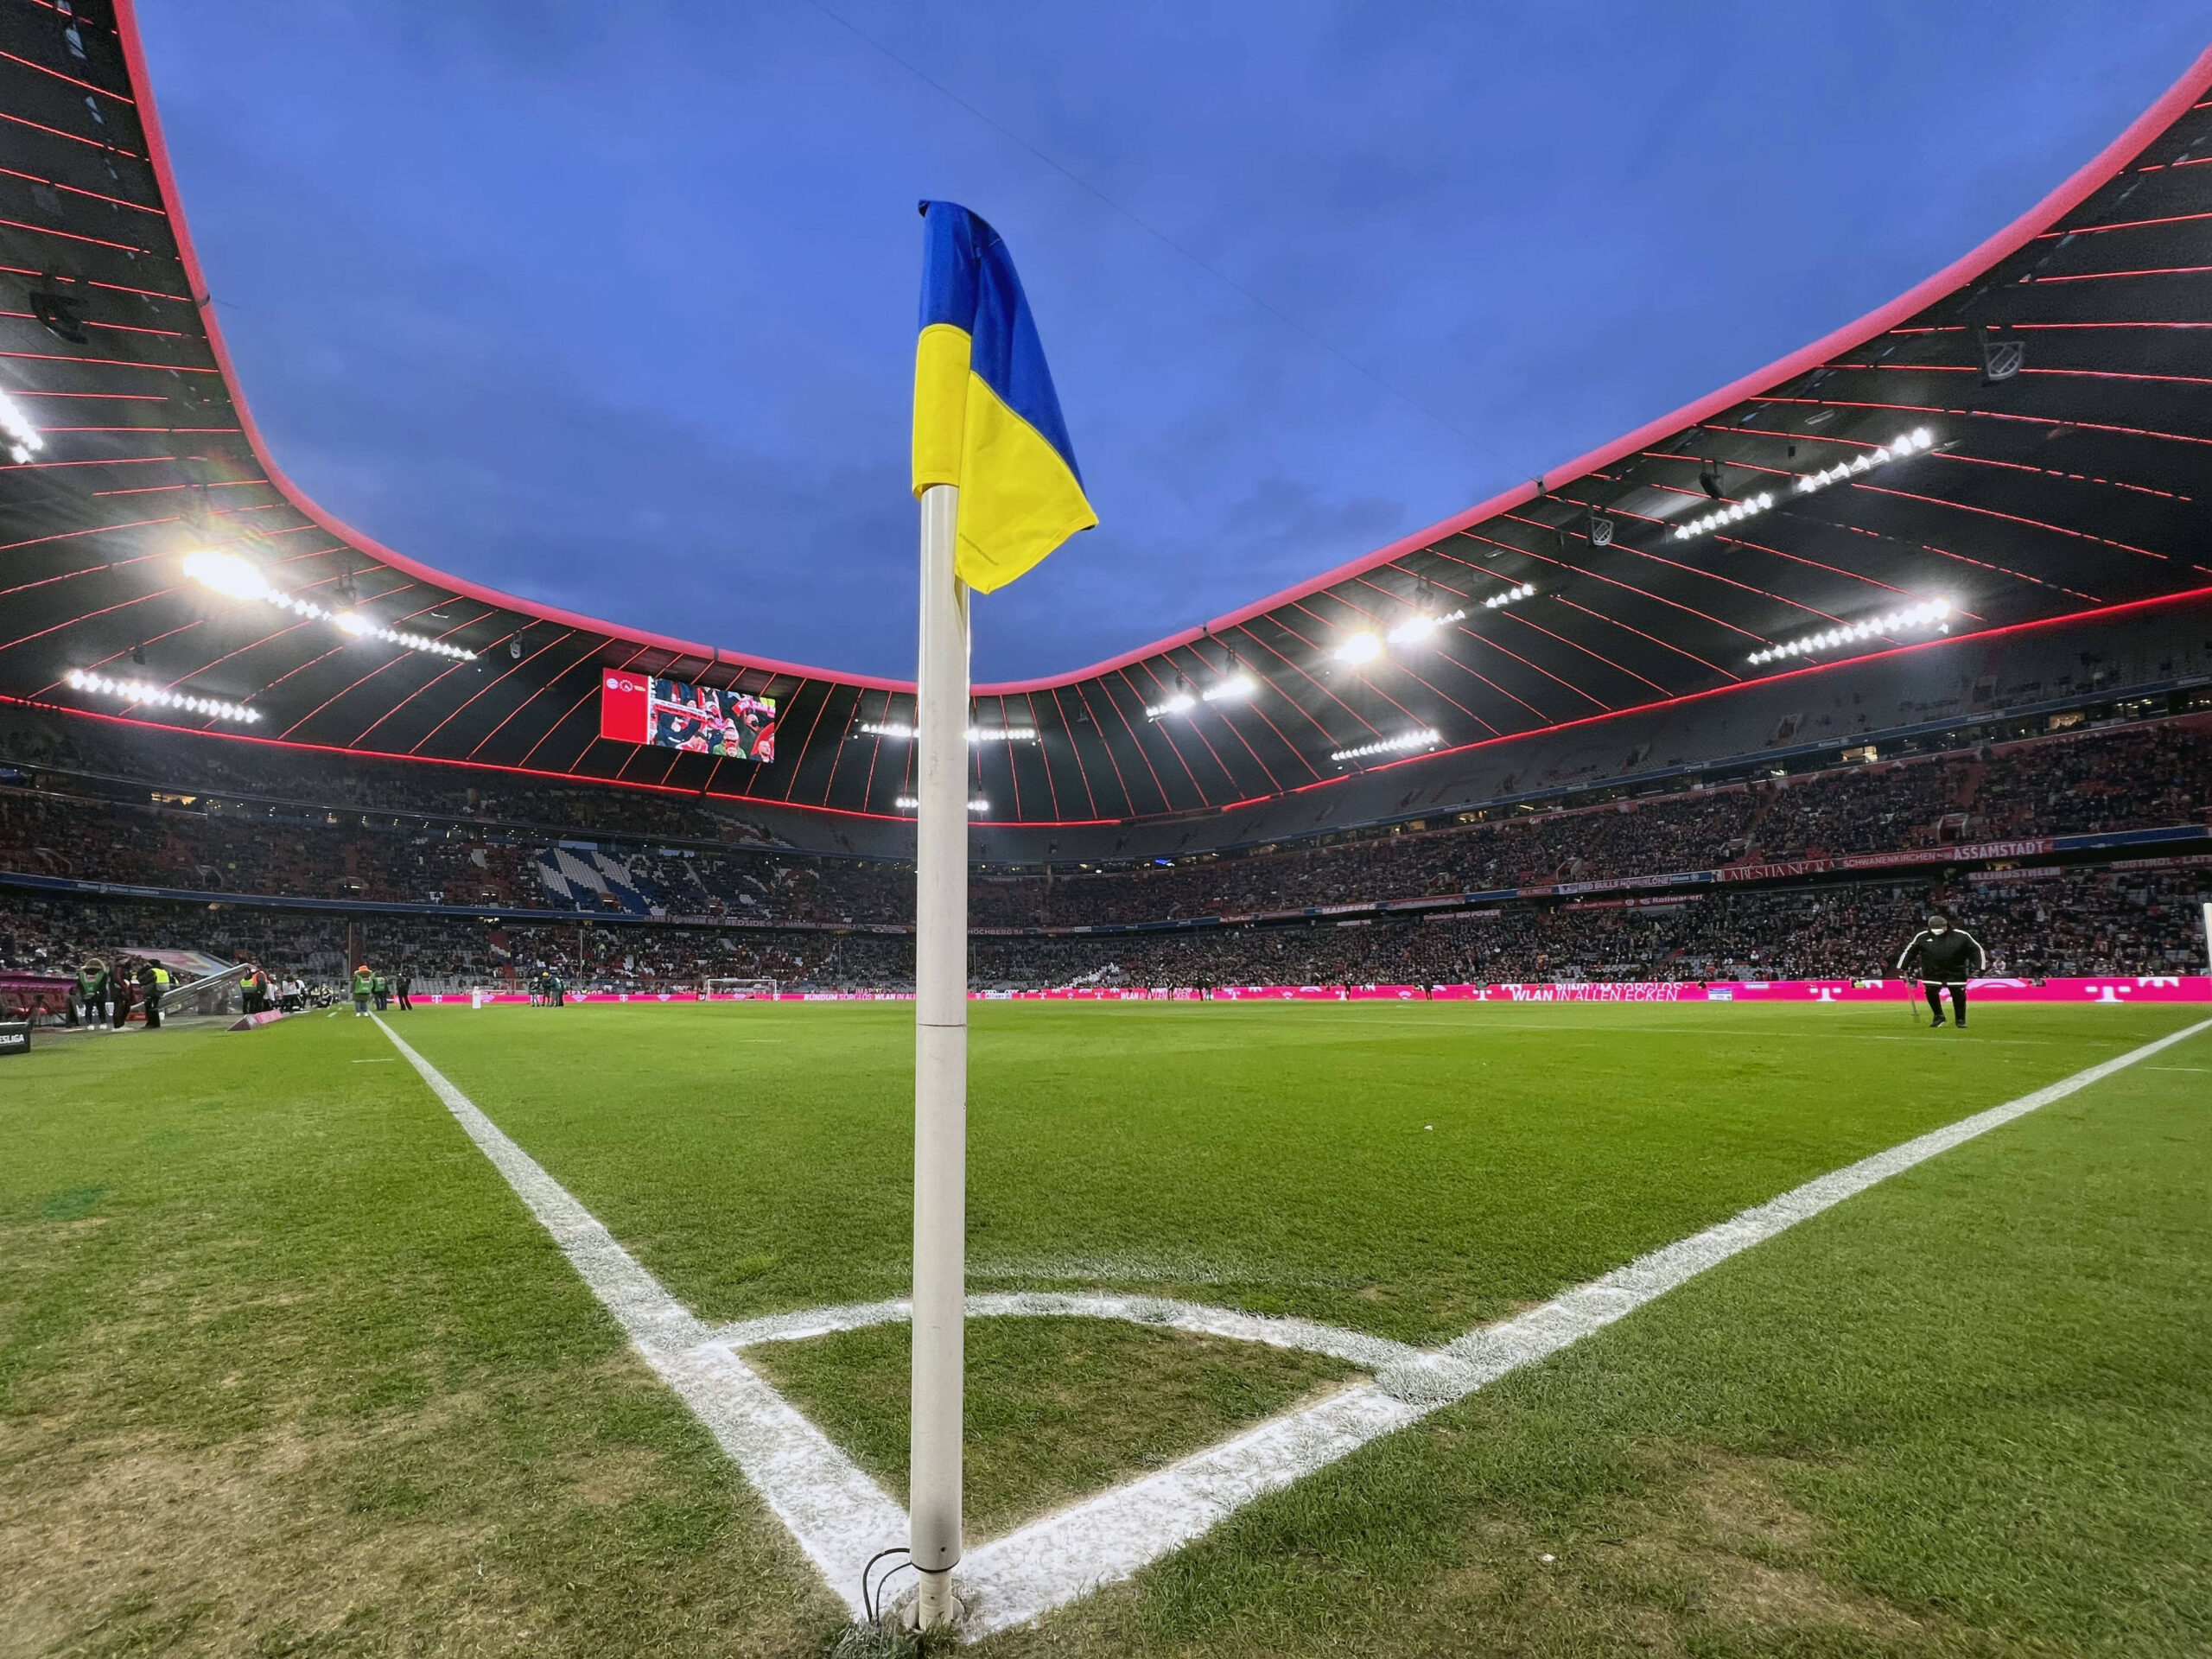 Eine Eckfahne in den Farben der ukrainischen Flagge im Stadion des FC Bayern